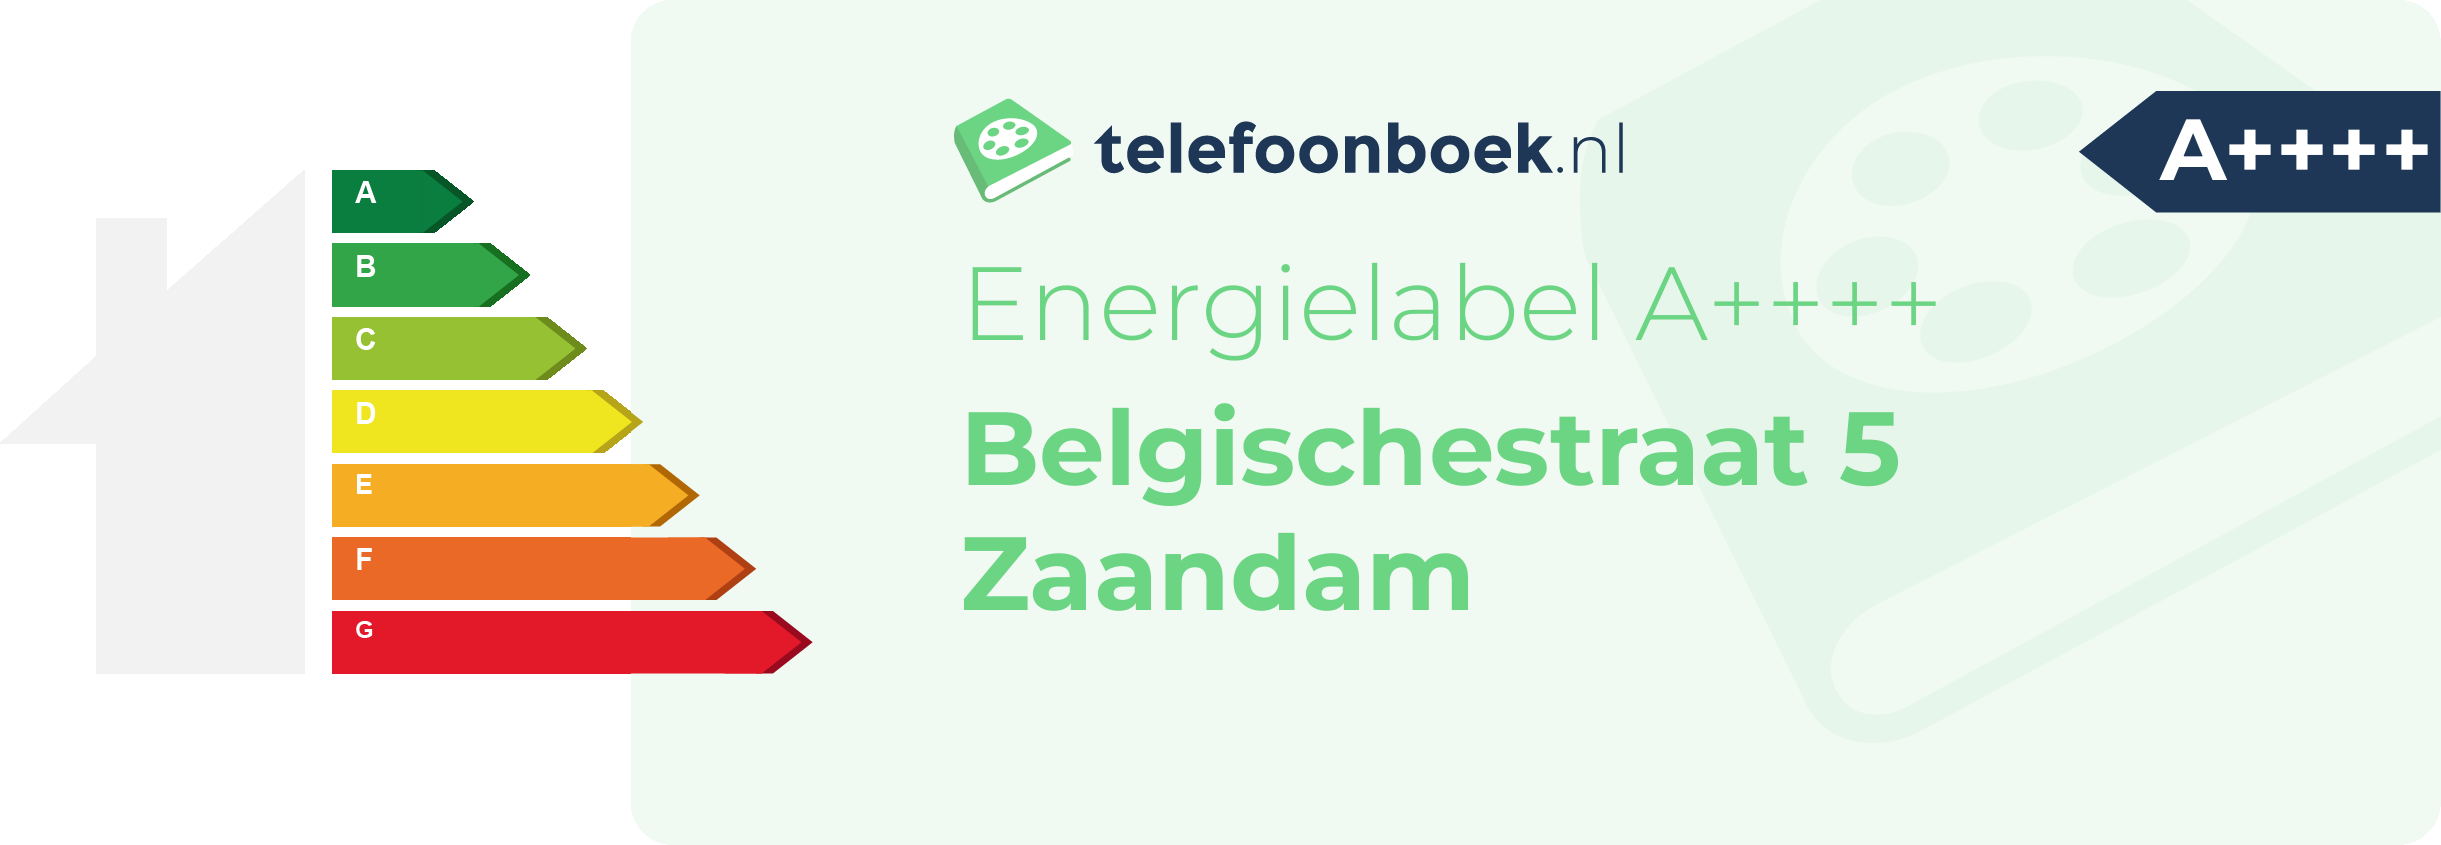 Energielabel Belgischestraat 5 Zaandam